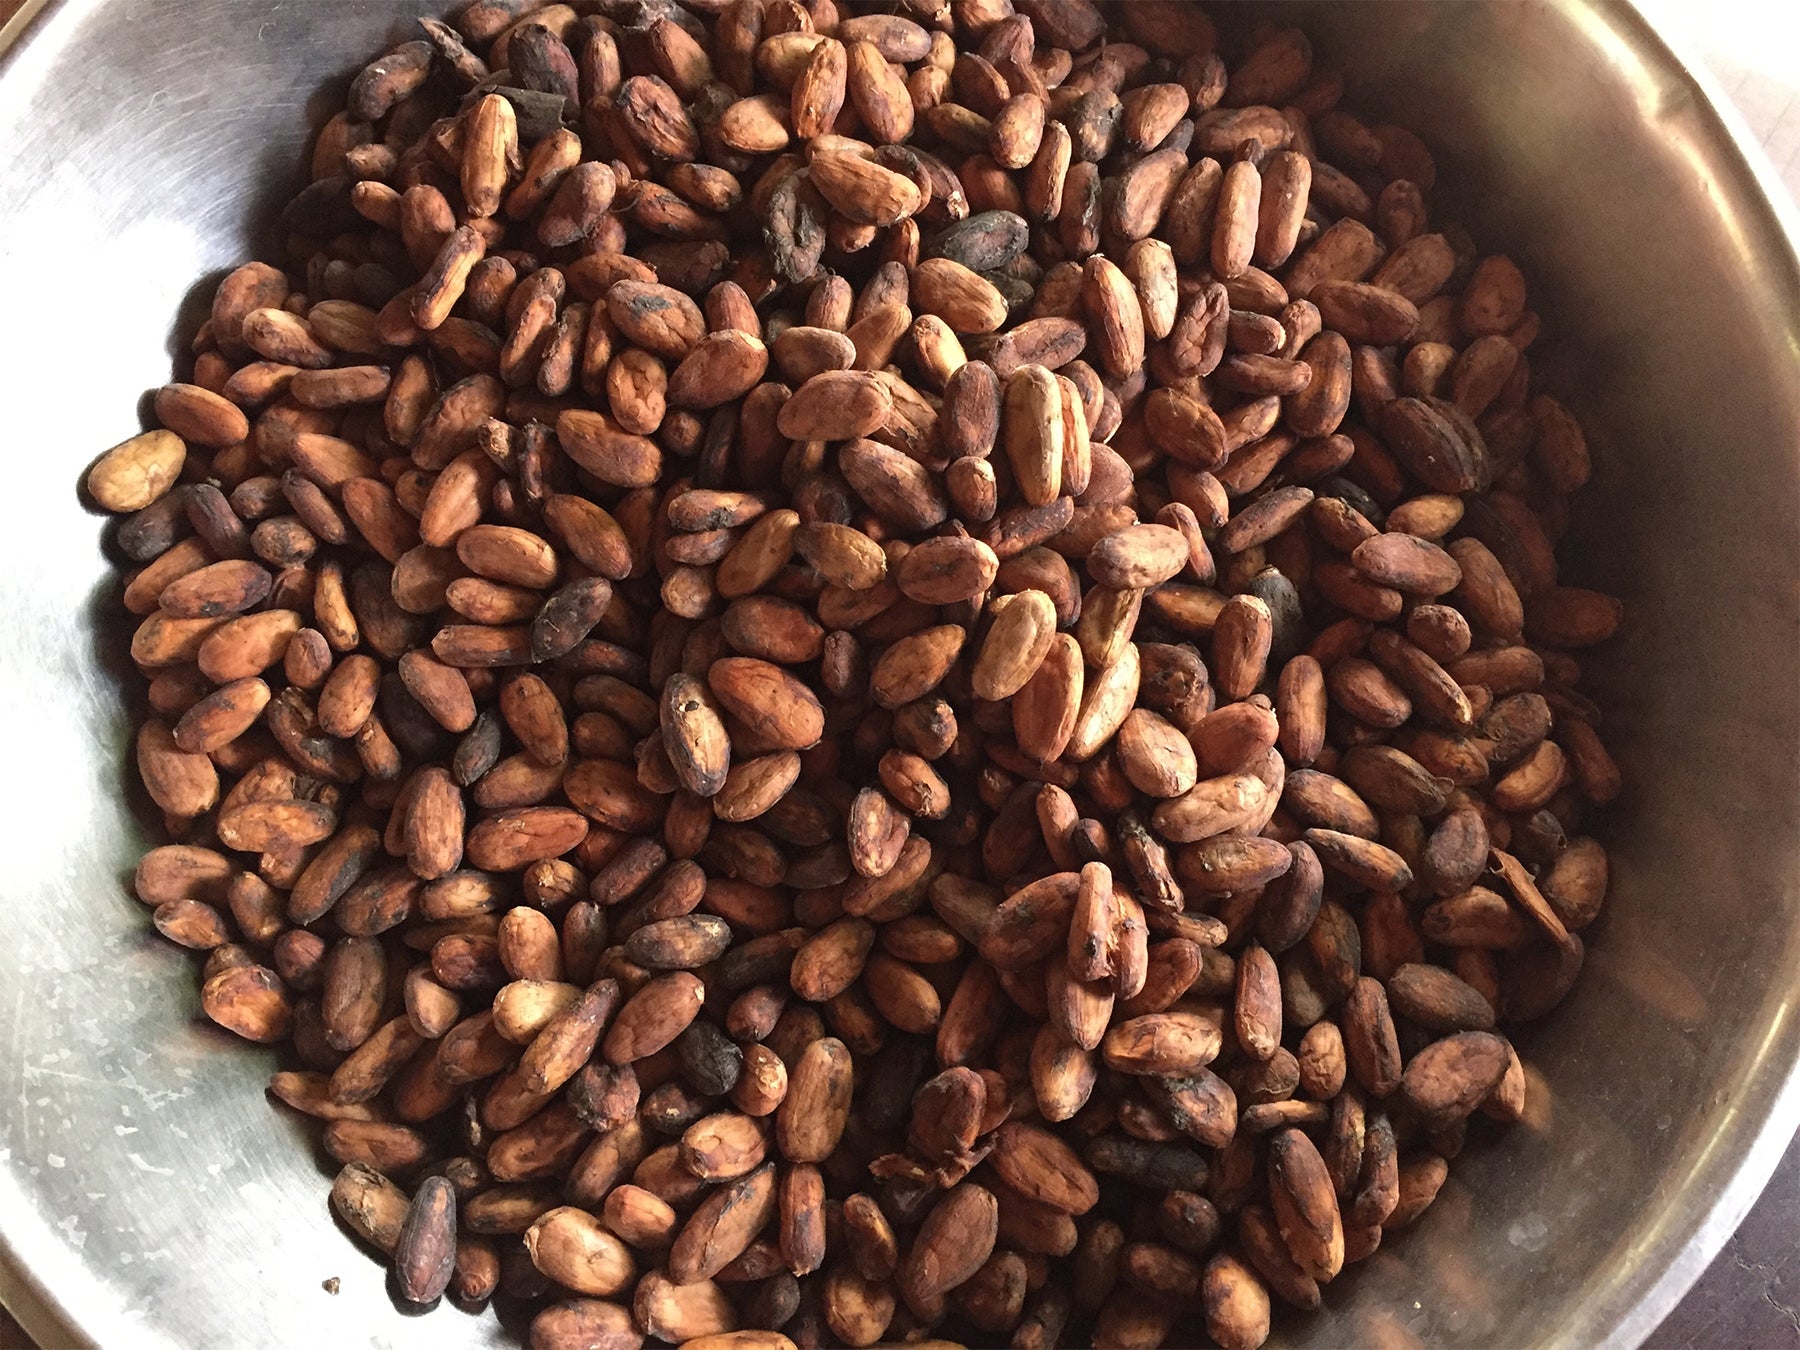 Pruebas de cacao ceremonial para detectar moho y micotoxinas